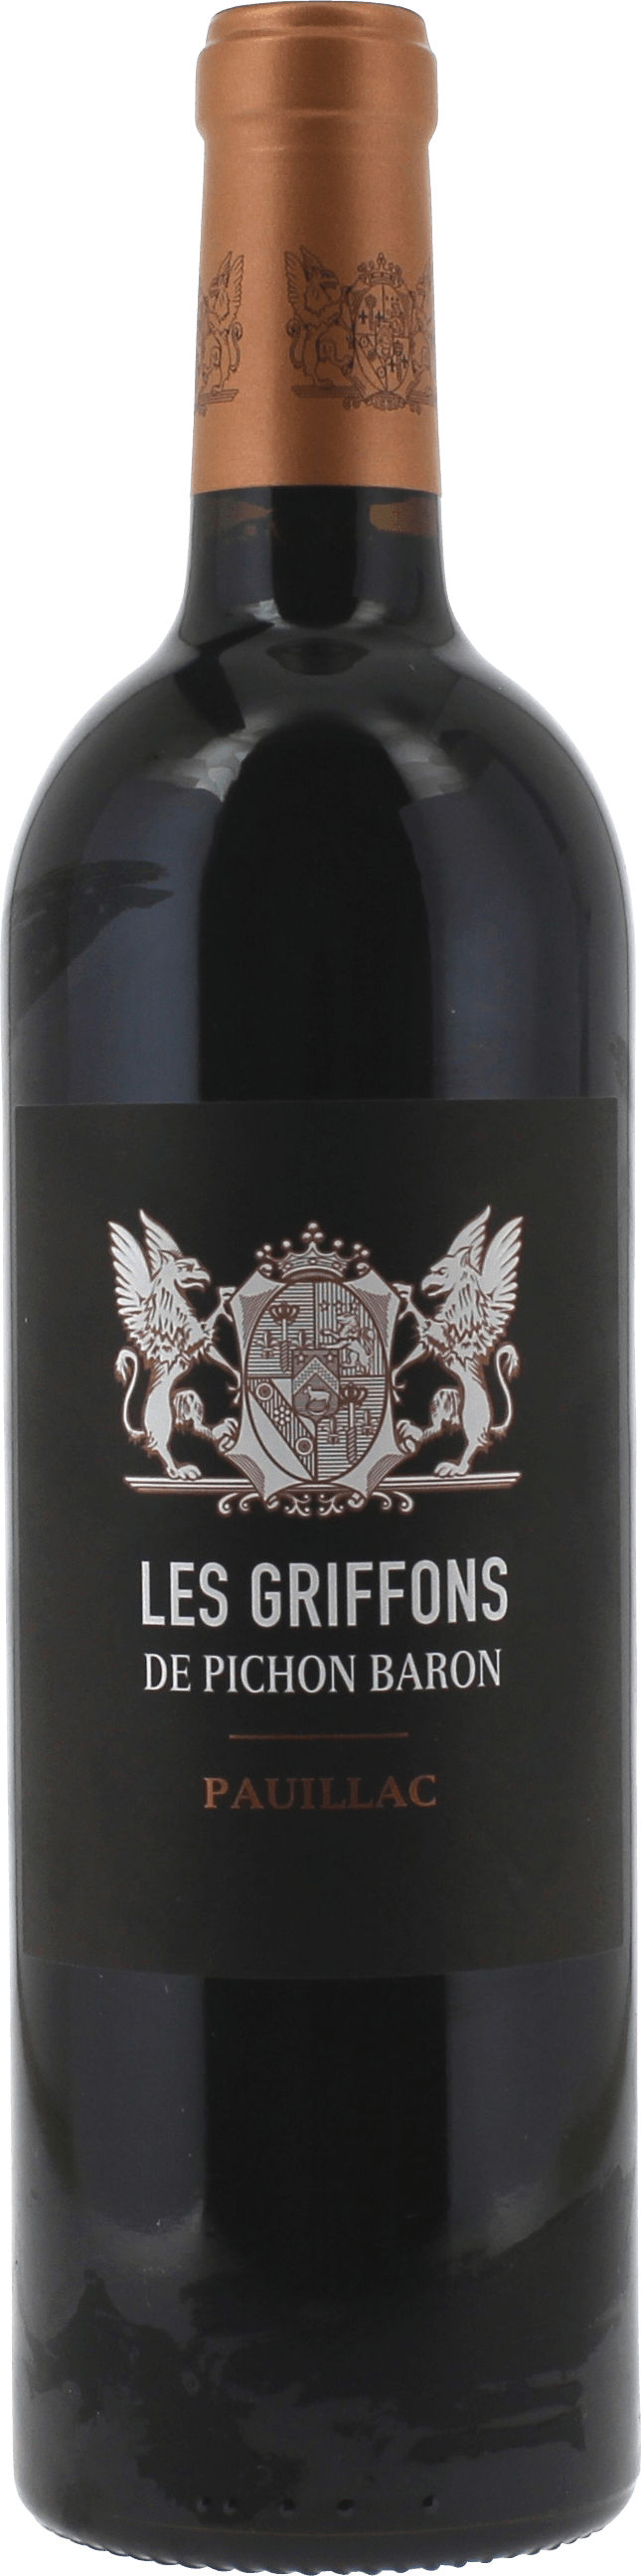 Griffons de pichon baron 2016  Pauillac, Bordeaux rouge